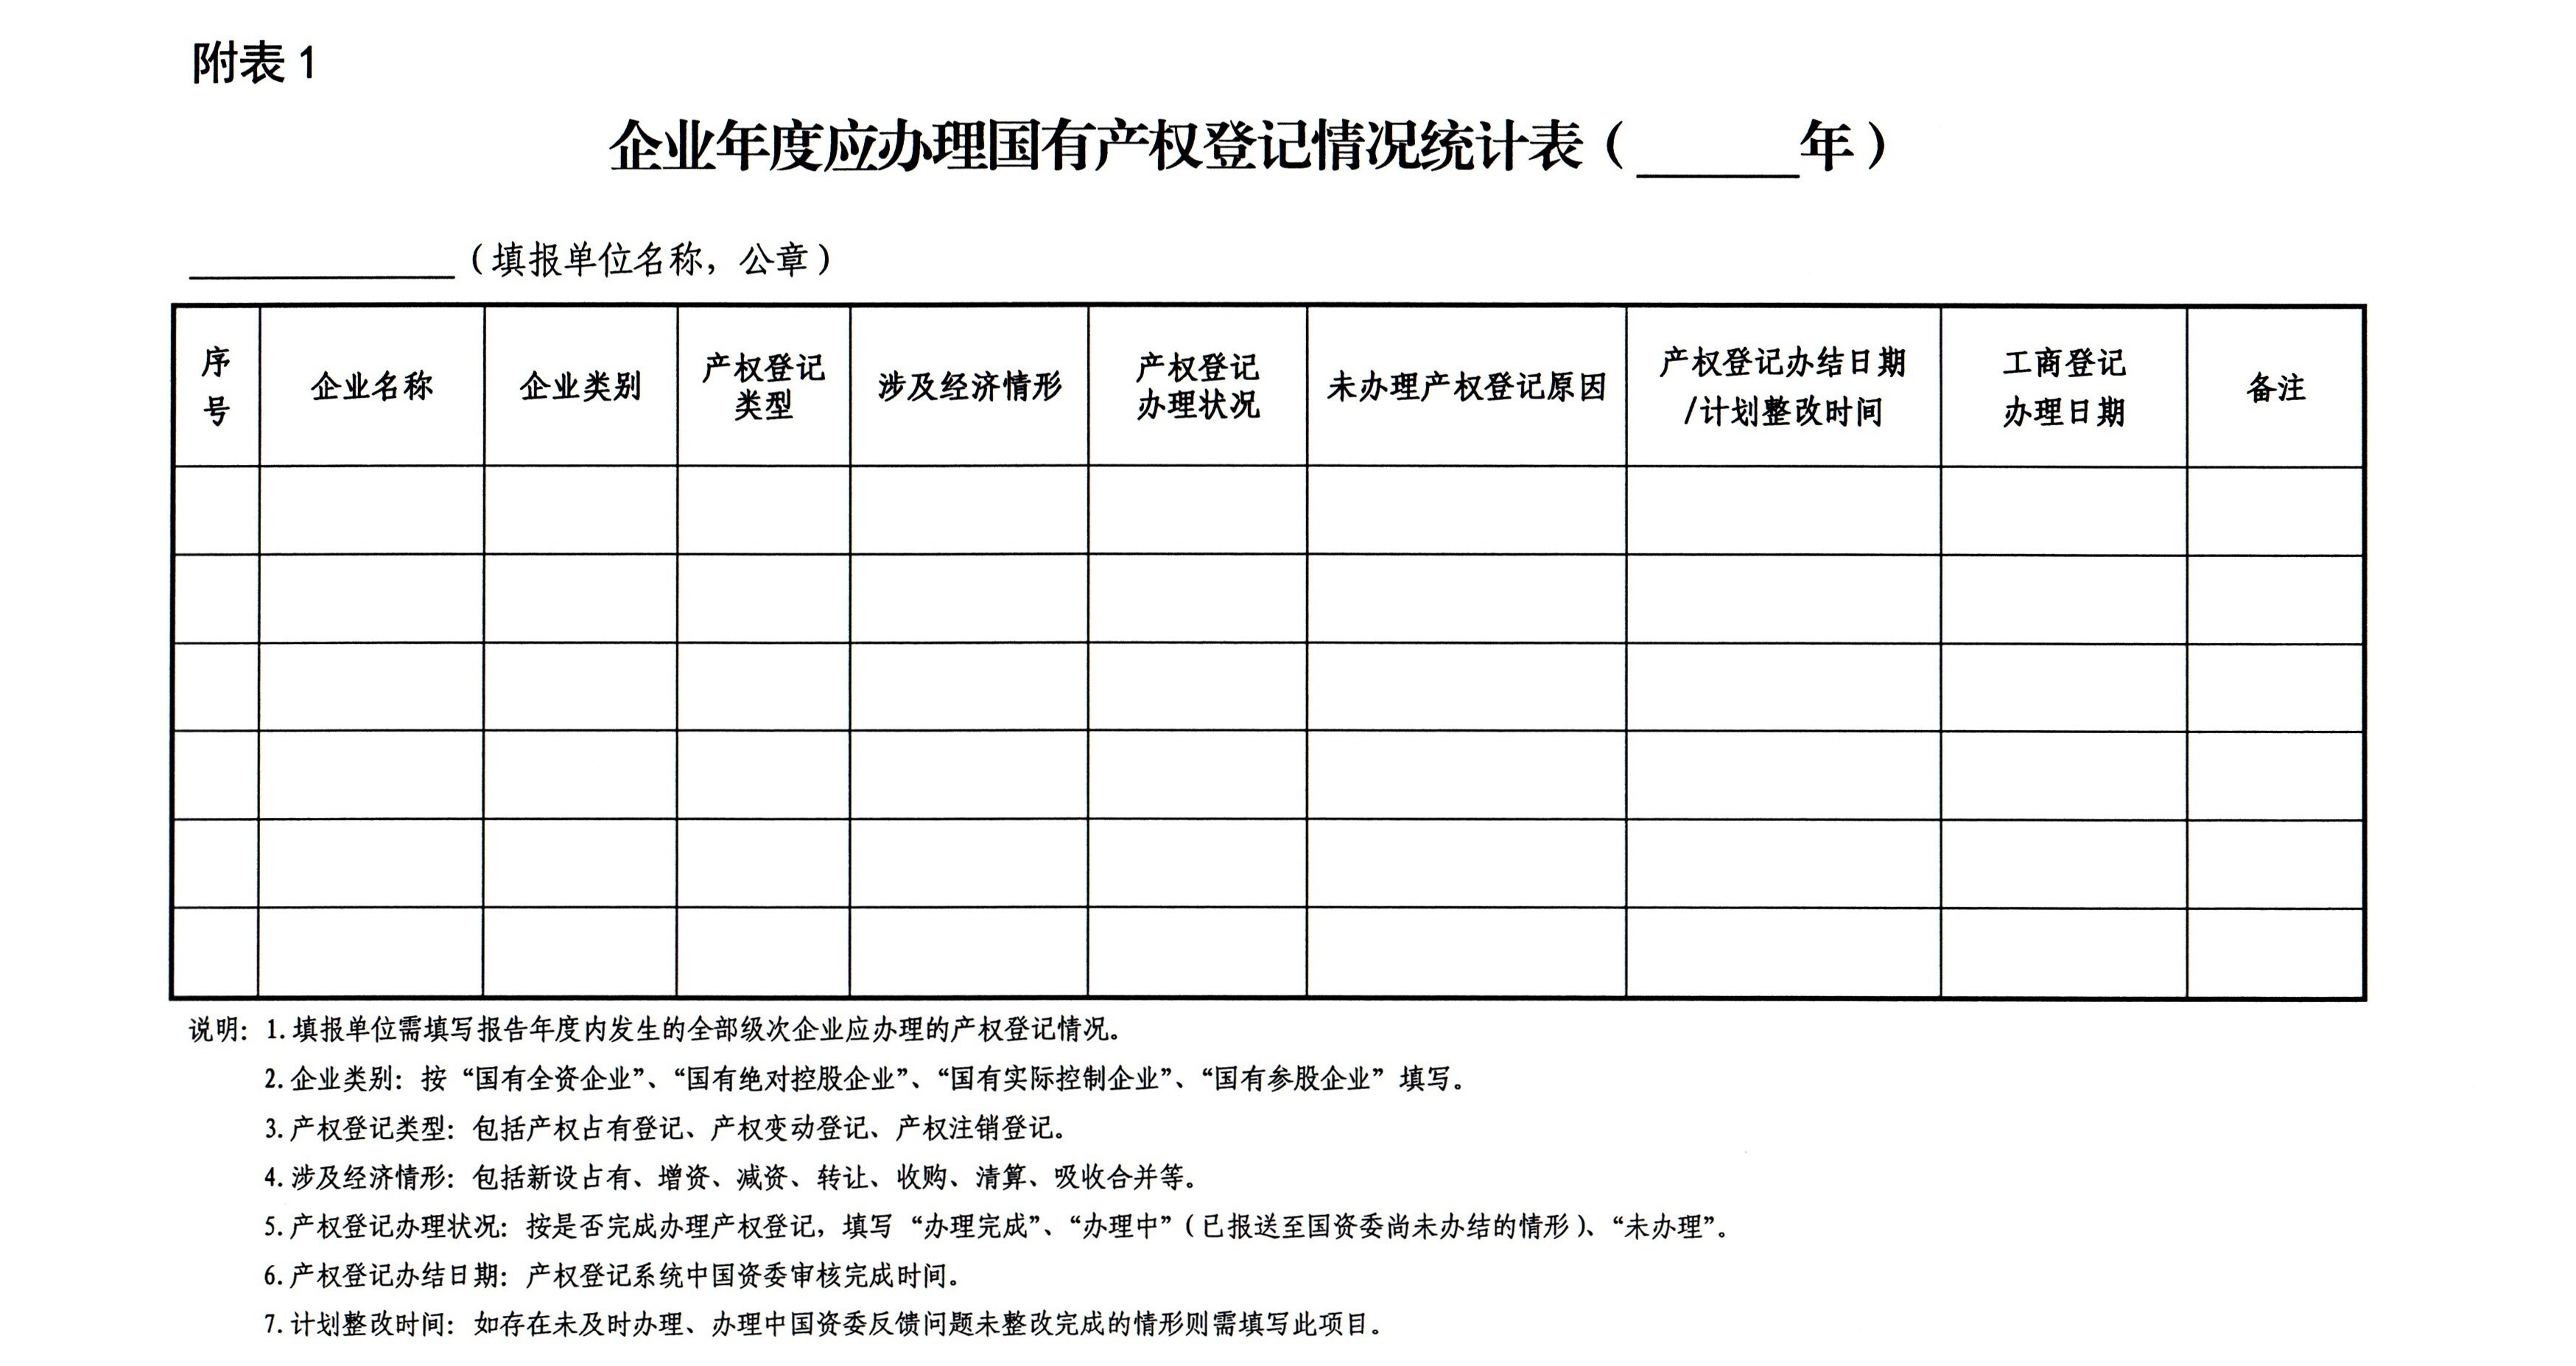 市国资委中国体育彩票进一步规范国有产权管理情况年度报送工作的通知